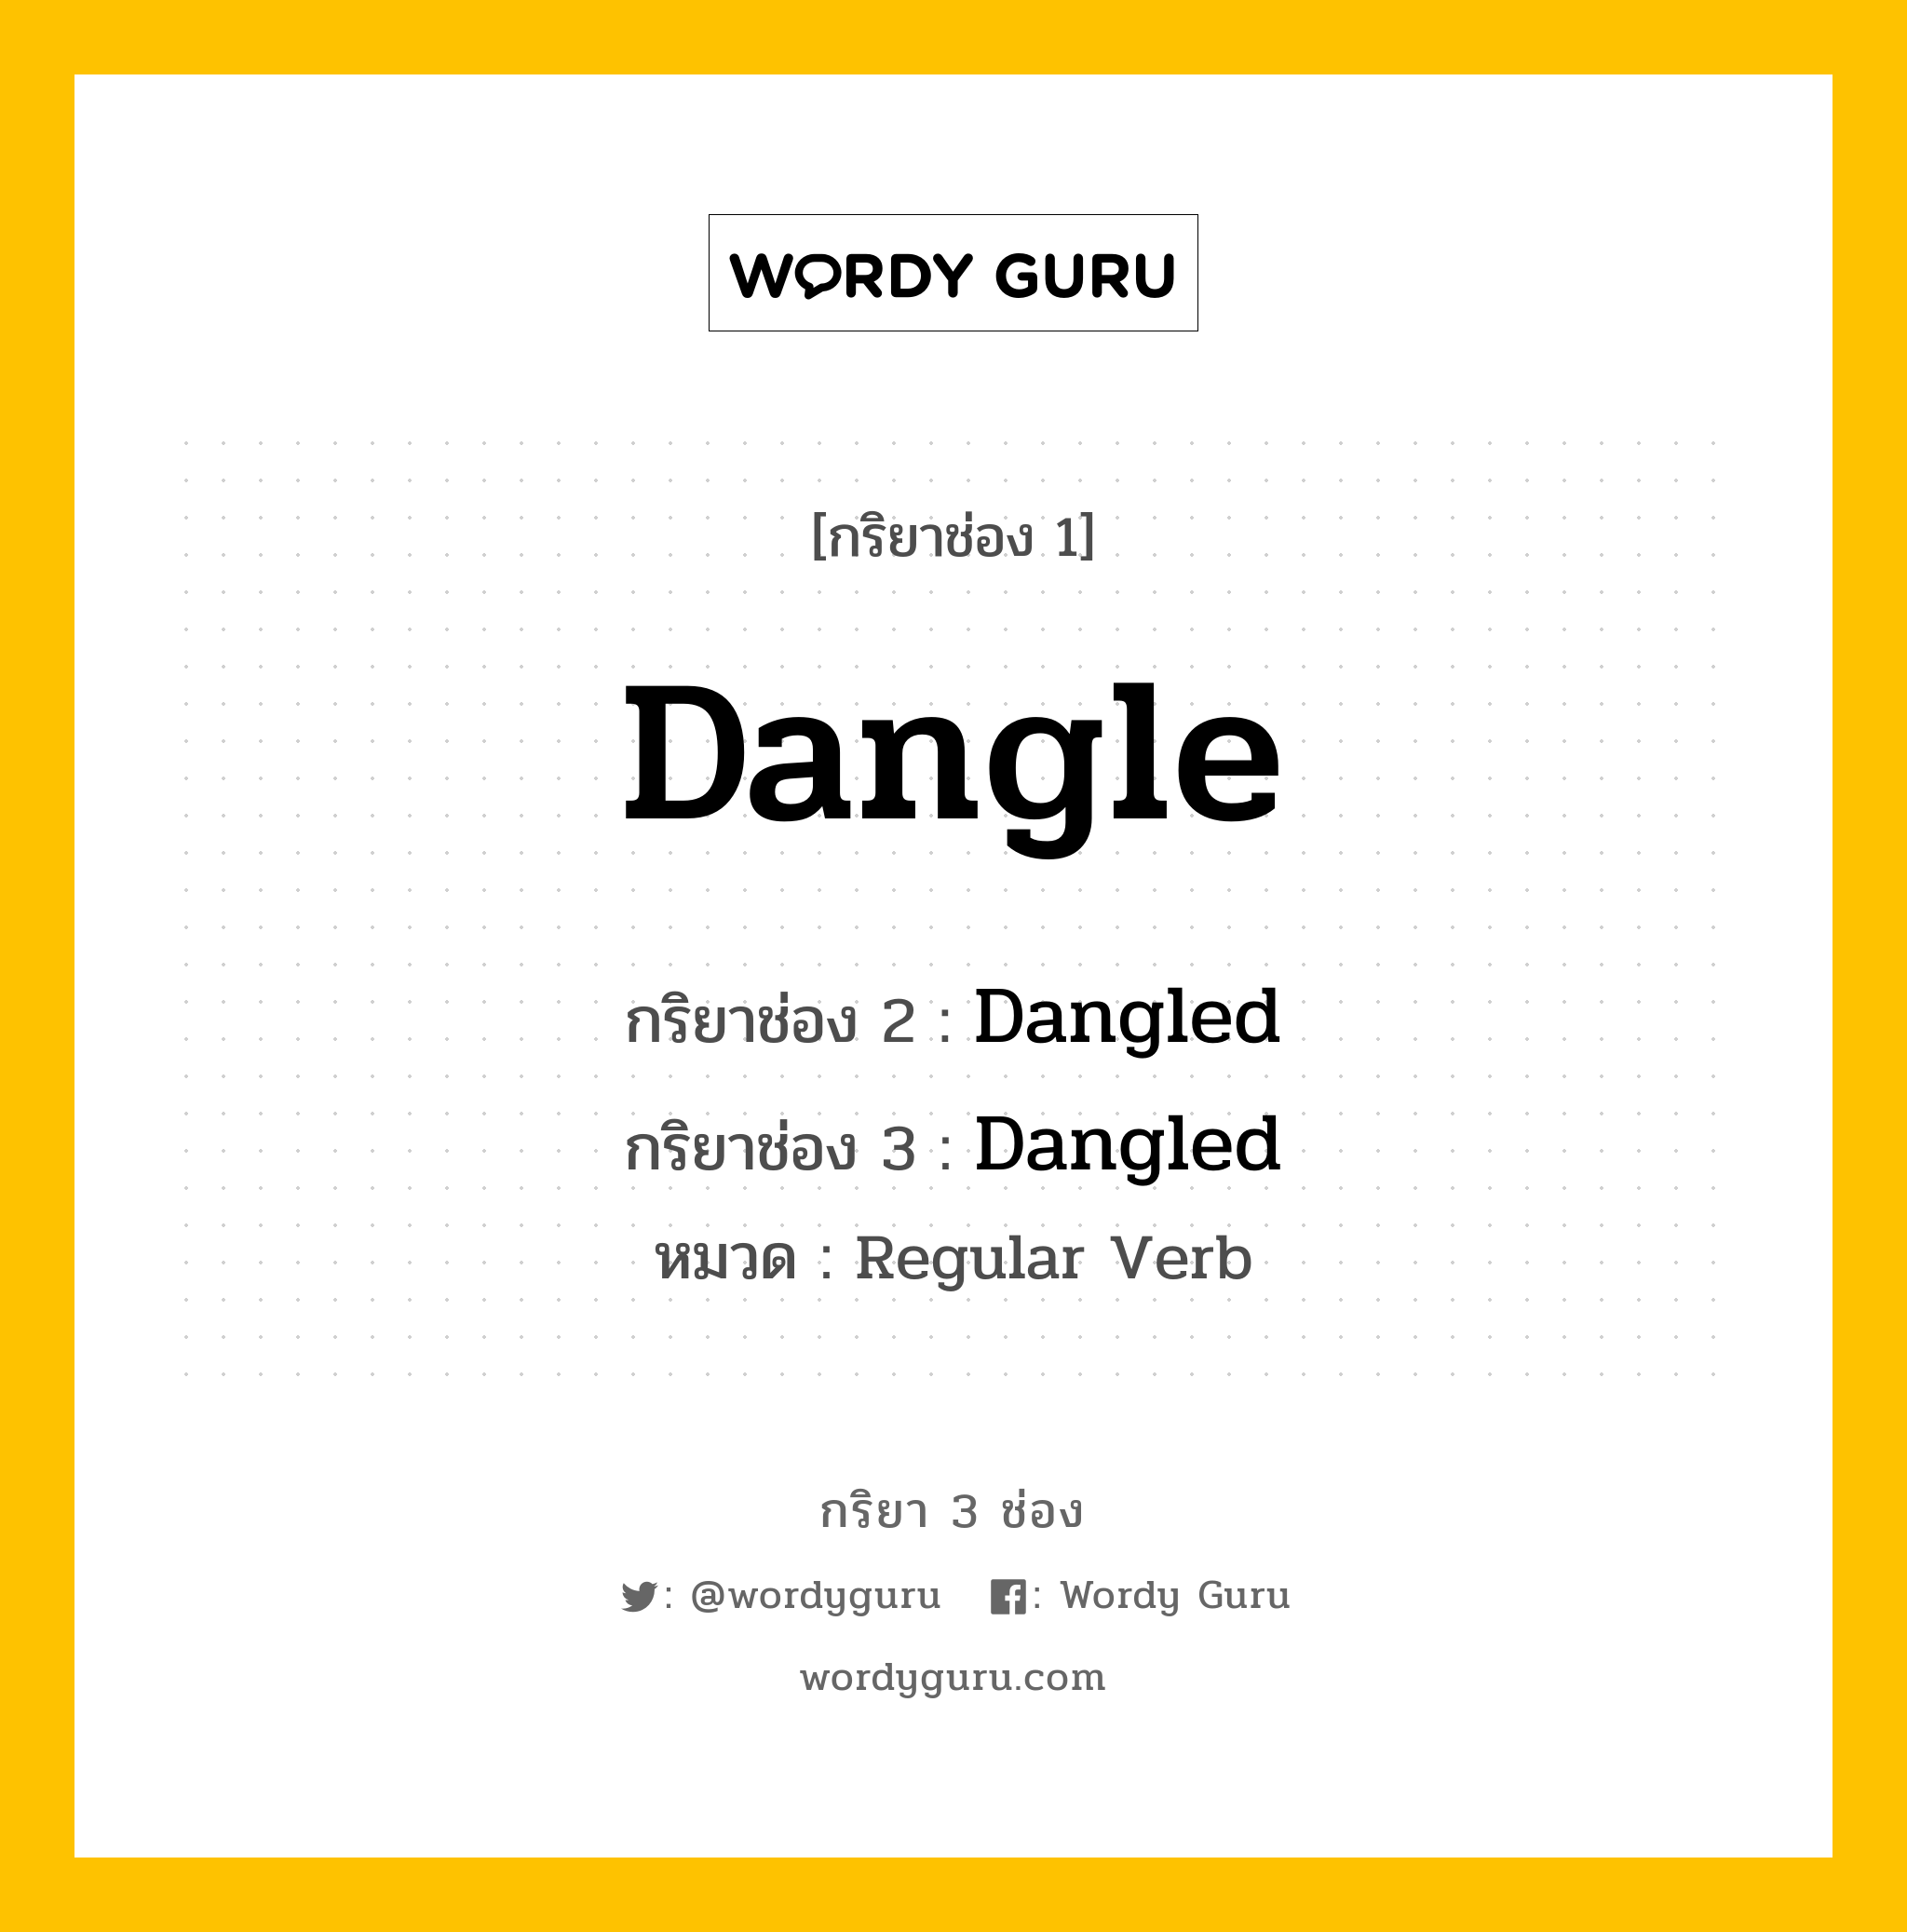 กริยา 3 ช่อง: Dangle ช่อง 2 Dangle ช่อง 3 คืออะไร, กริยาช่อง 1 Dangle กริยาช่อง 2 Dangled กริยาช่อง 3 Dangled หมวด Regular Verb หมวด Regular Verb